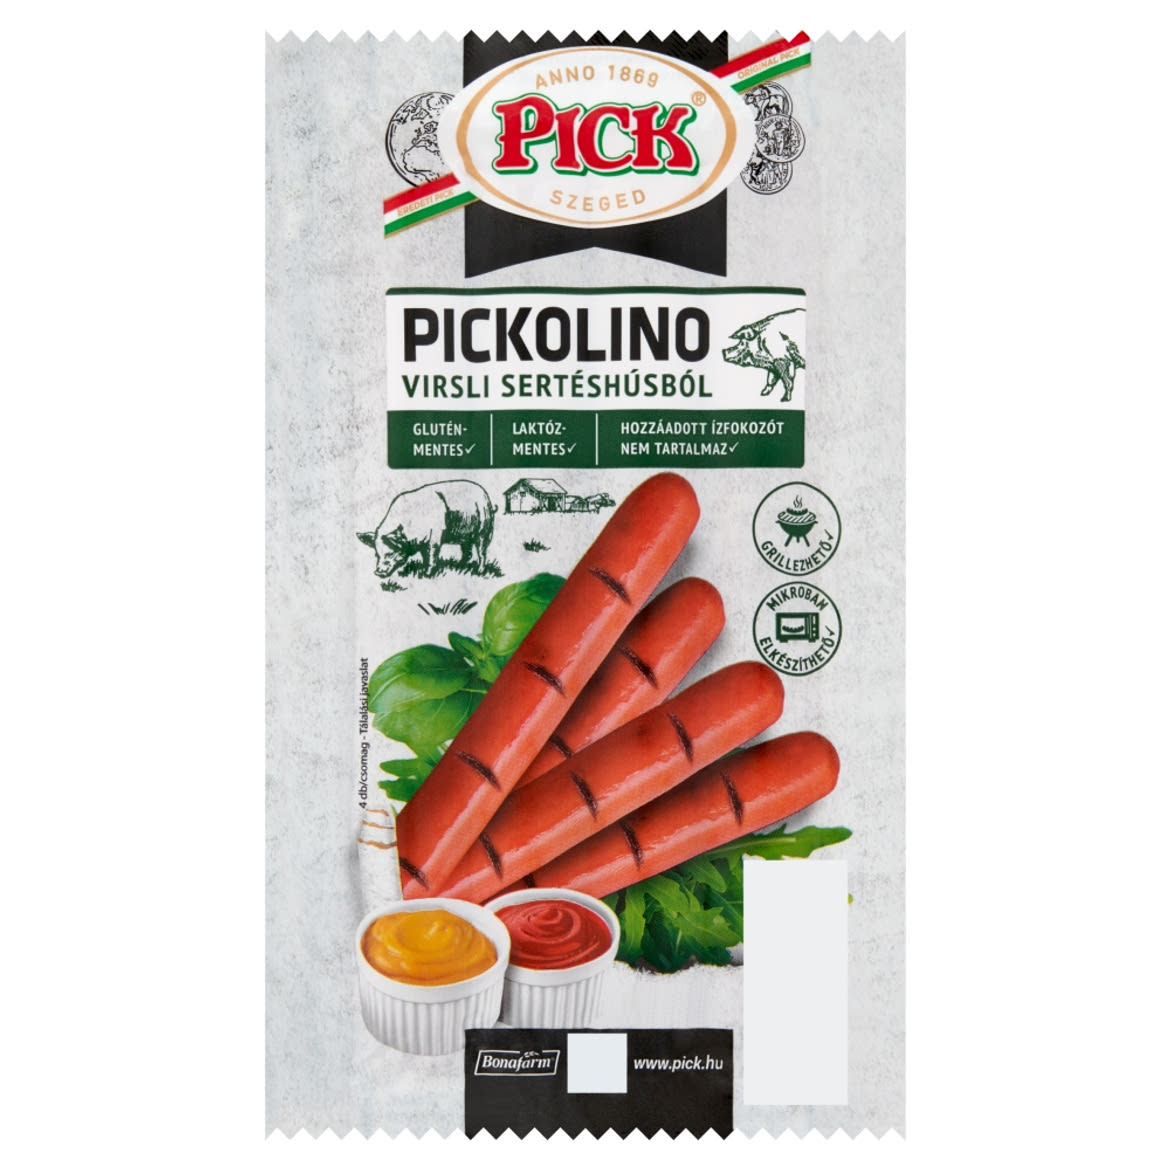 PICK Pickolino virsli